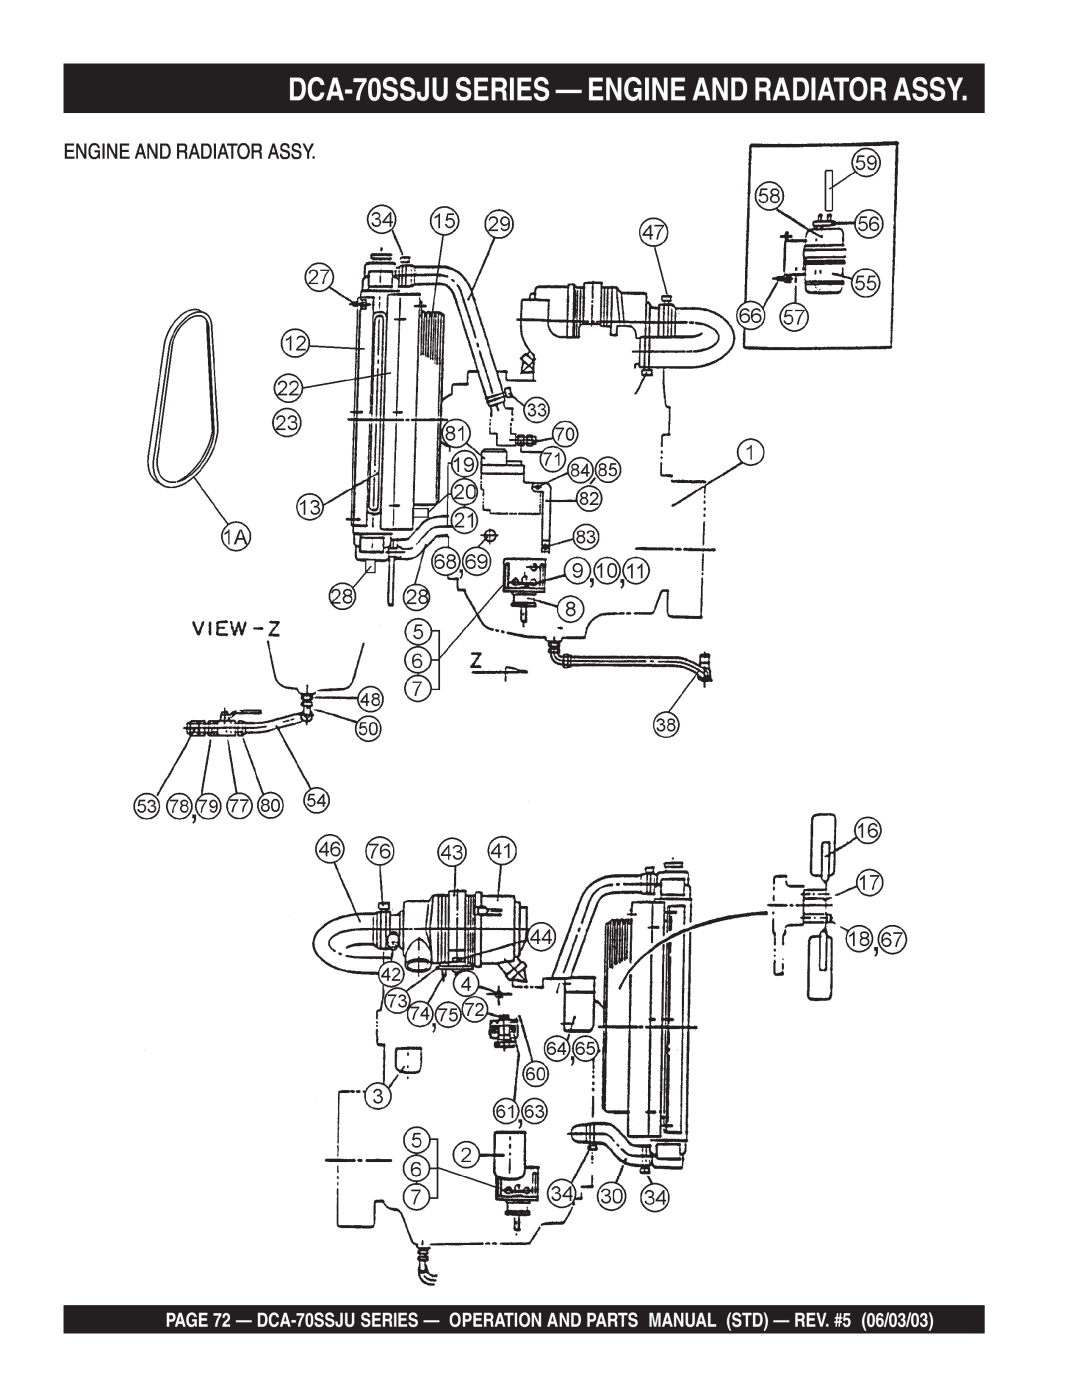 Multiquip operation manual DCA-70SSJUSERIES — ENGINE AND RADIATOR ASSY, Engine And Radiator Assy 